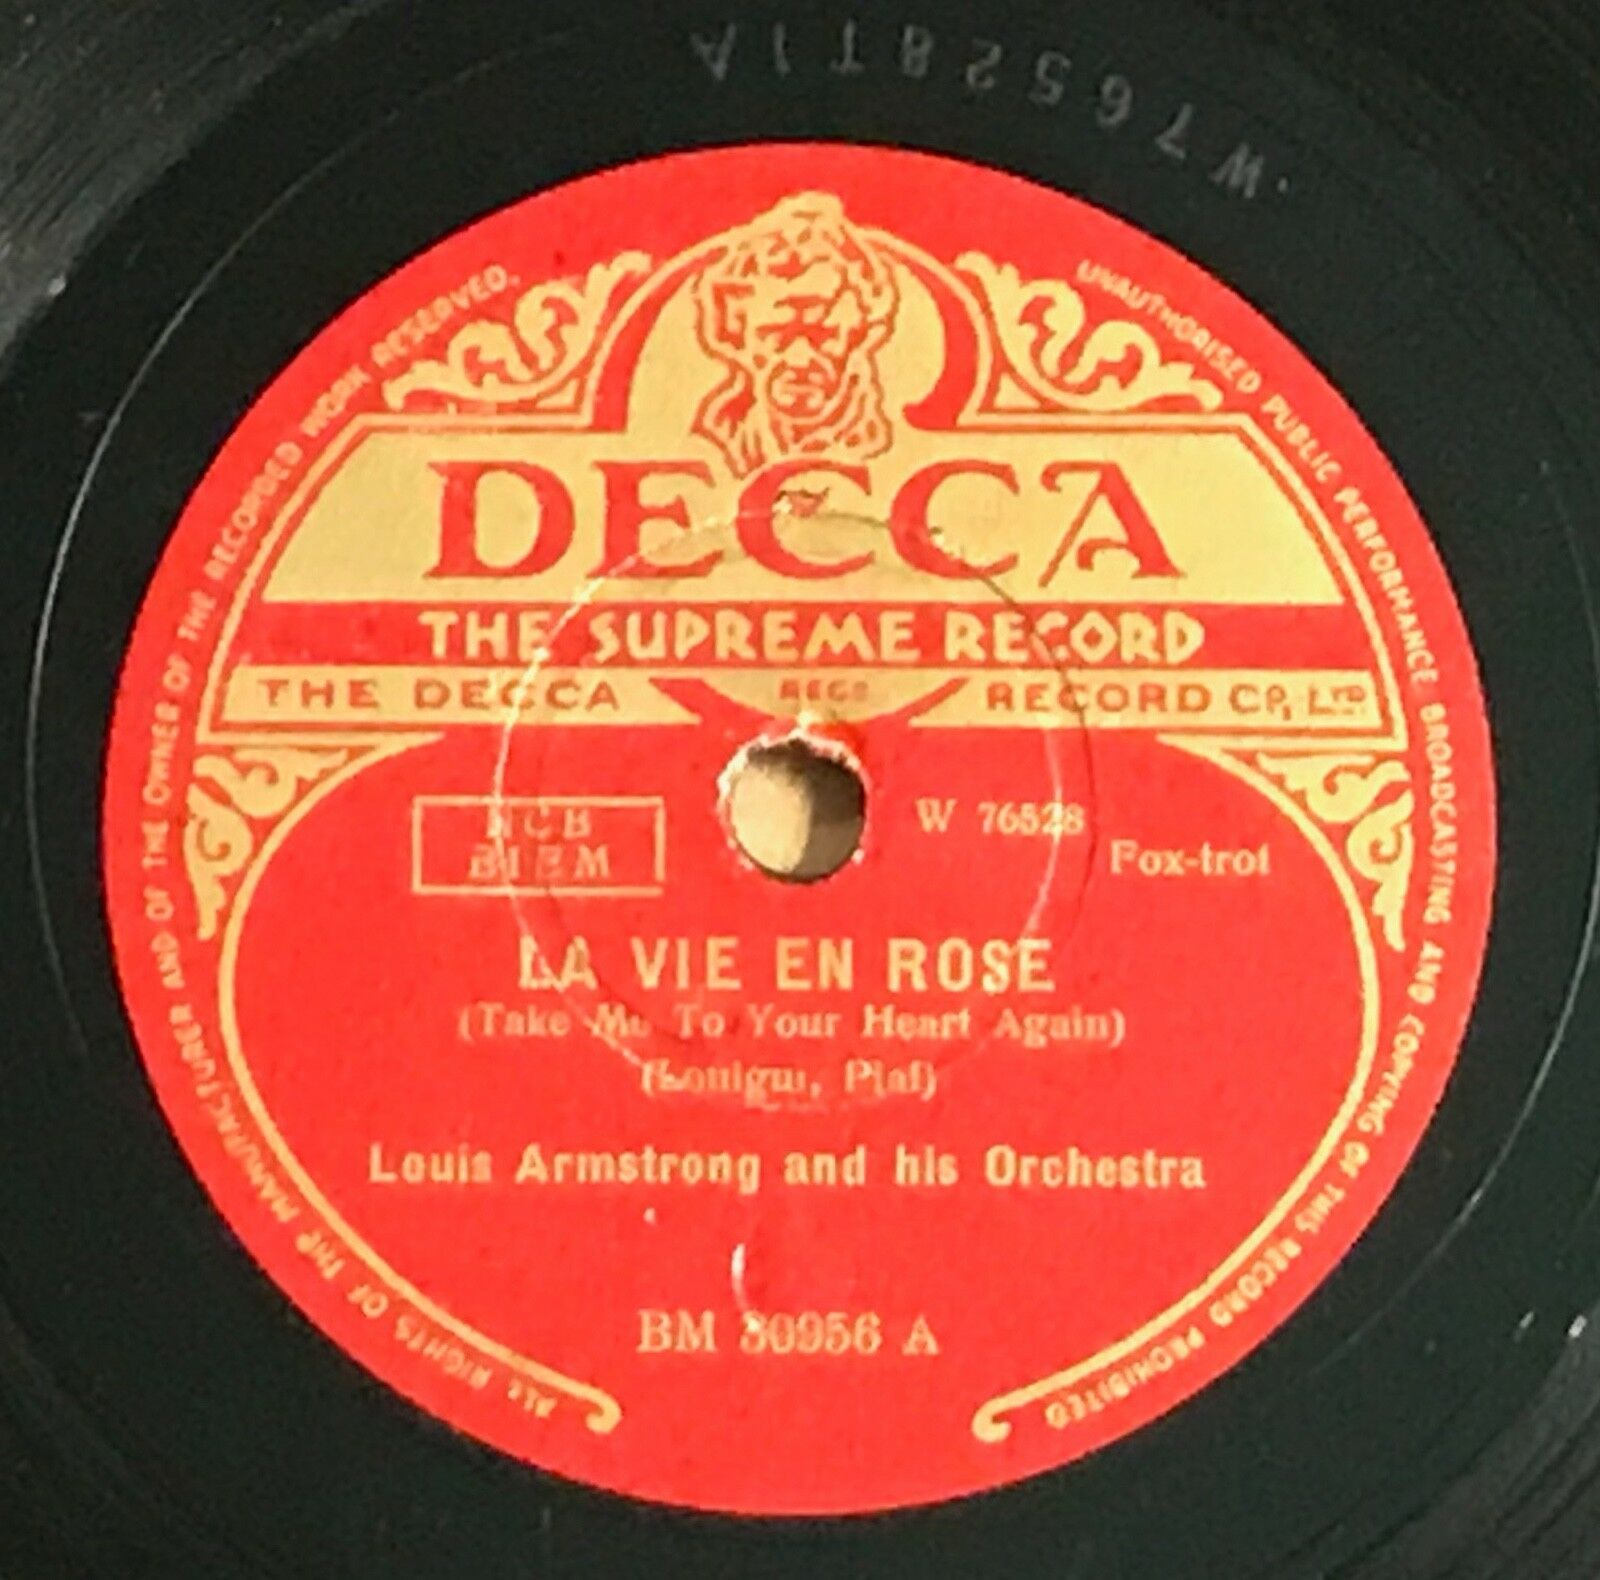 RARE 78 rpm Louis Armstrong-La Vie En Rose/C'est Si Bon Decca BM 30956 England